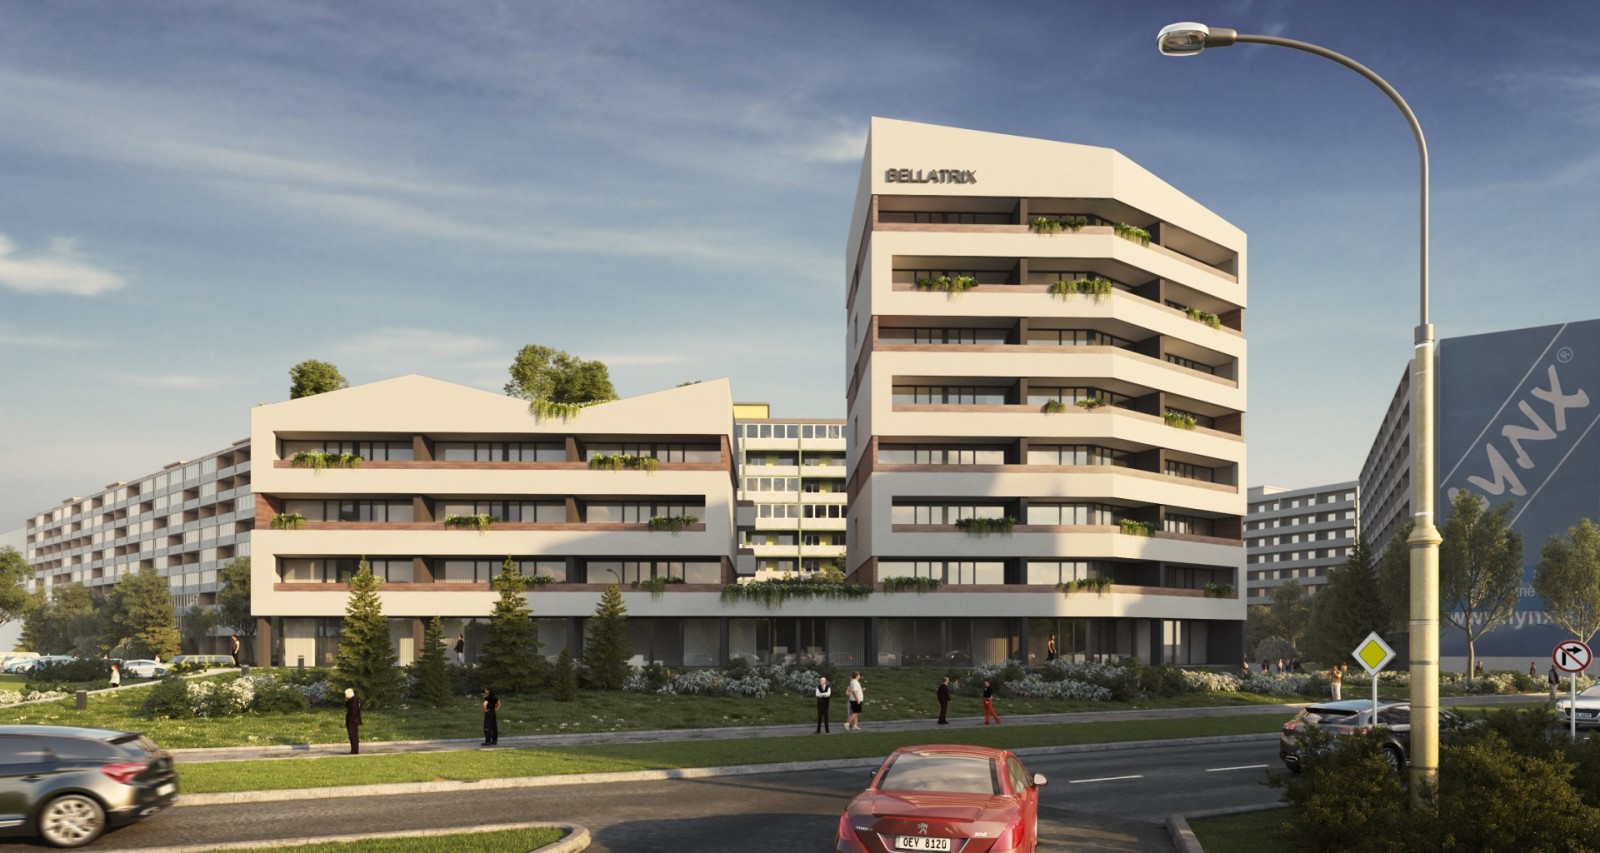 Novostavba bytového domu BELLATRIX situovaná medzi Moldavskou a Idanskou ulicou v Košiciach ponúkne 36 bytov, 4 polyfunkčné priestory a podzemnú garáž. Projekt zaujme predovšetkým zelenou strechou a predprípravou pre inteligentnú domácnosť.